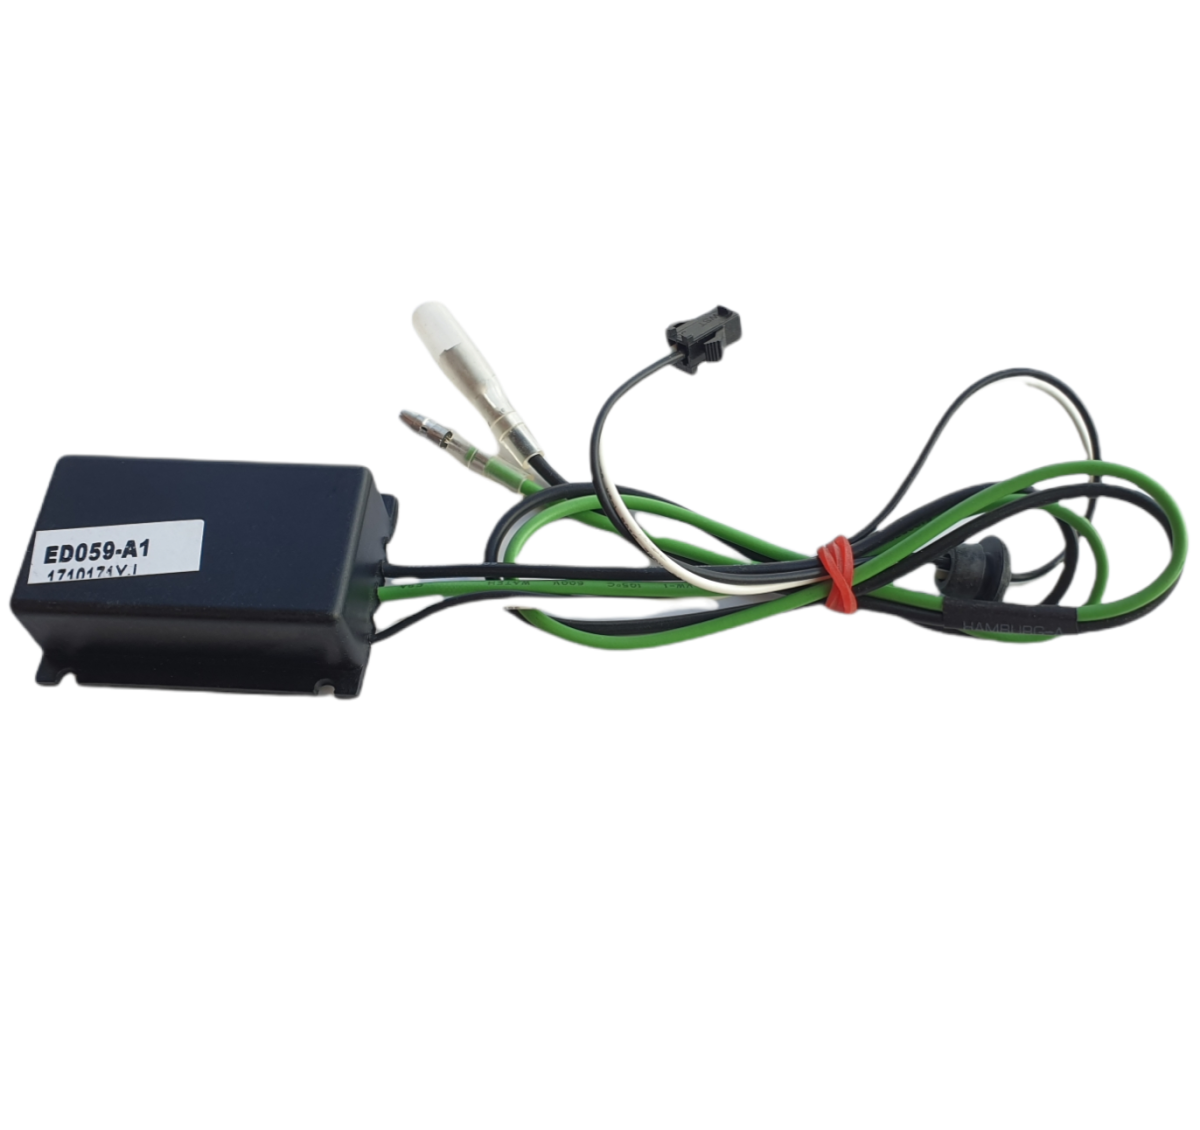 Steuerteil ED059-A1 für Sonar Scheinwerfer mit LED Standlicht Tagfahrlicht-Optik